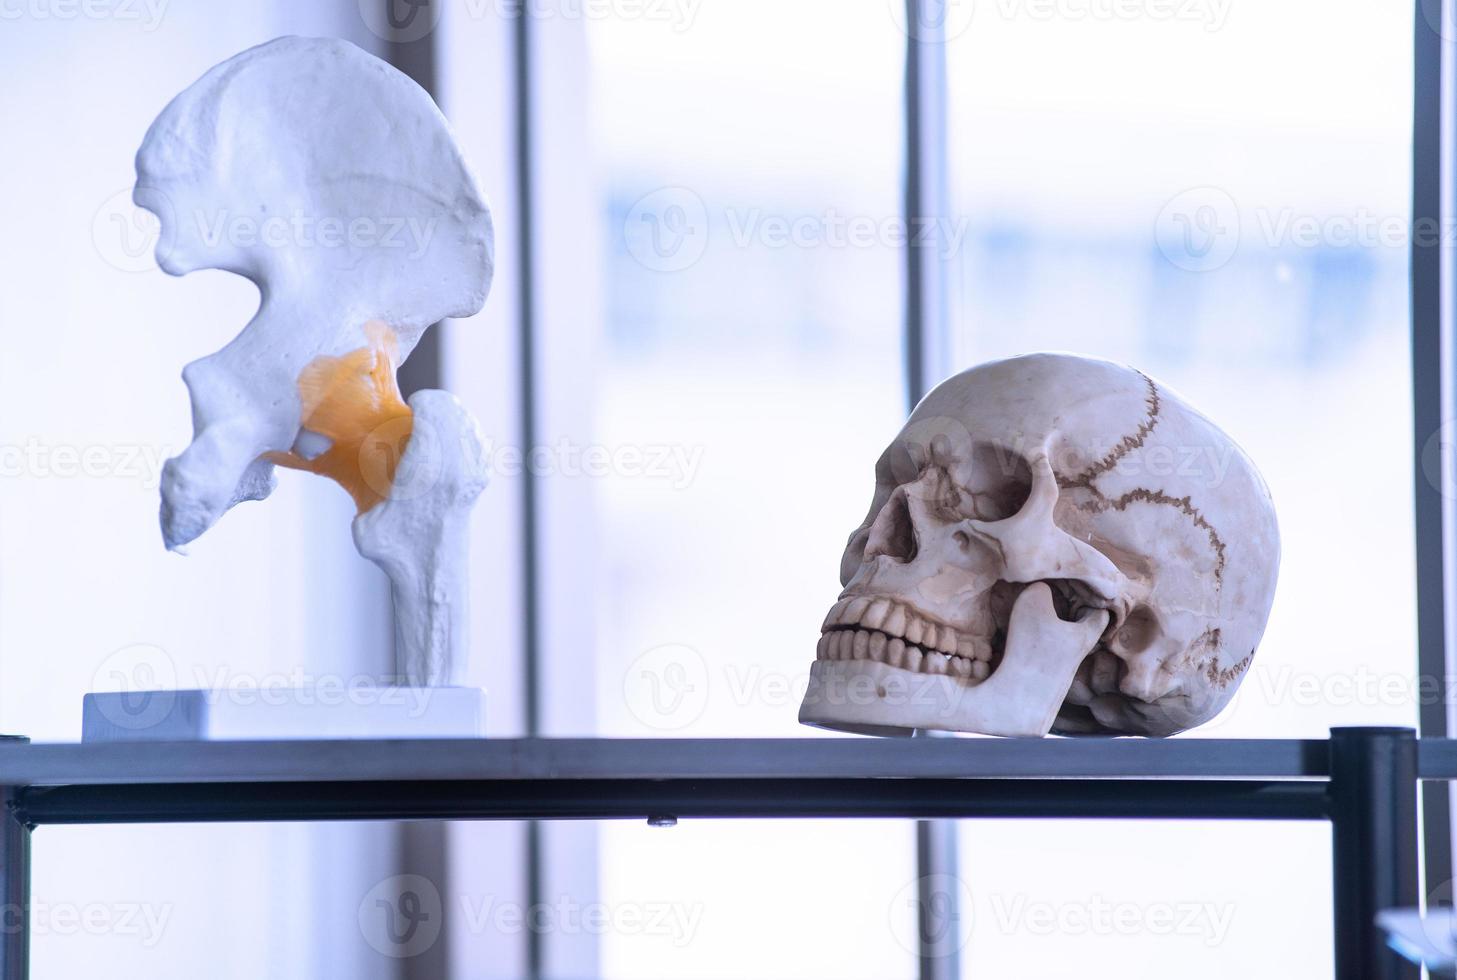 esqueleto artificial, como crânio, osso e dentes em laboratório de faculdades e universidades para ensino, aprendizagem, pesquisa forense, anatomia, biologia e ciência antiga foto